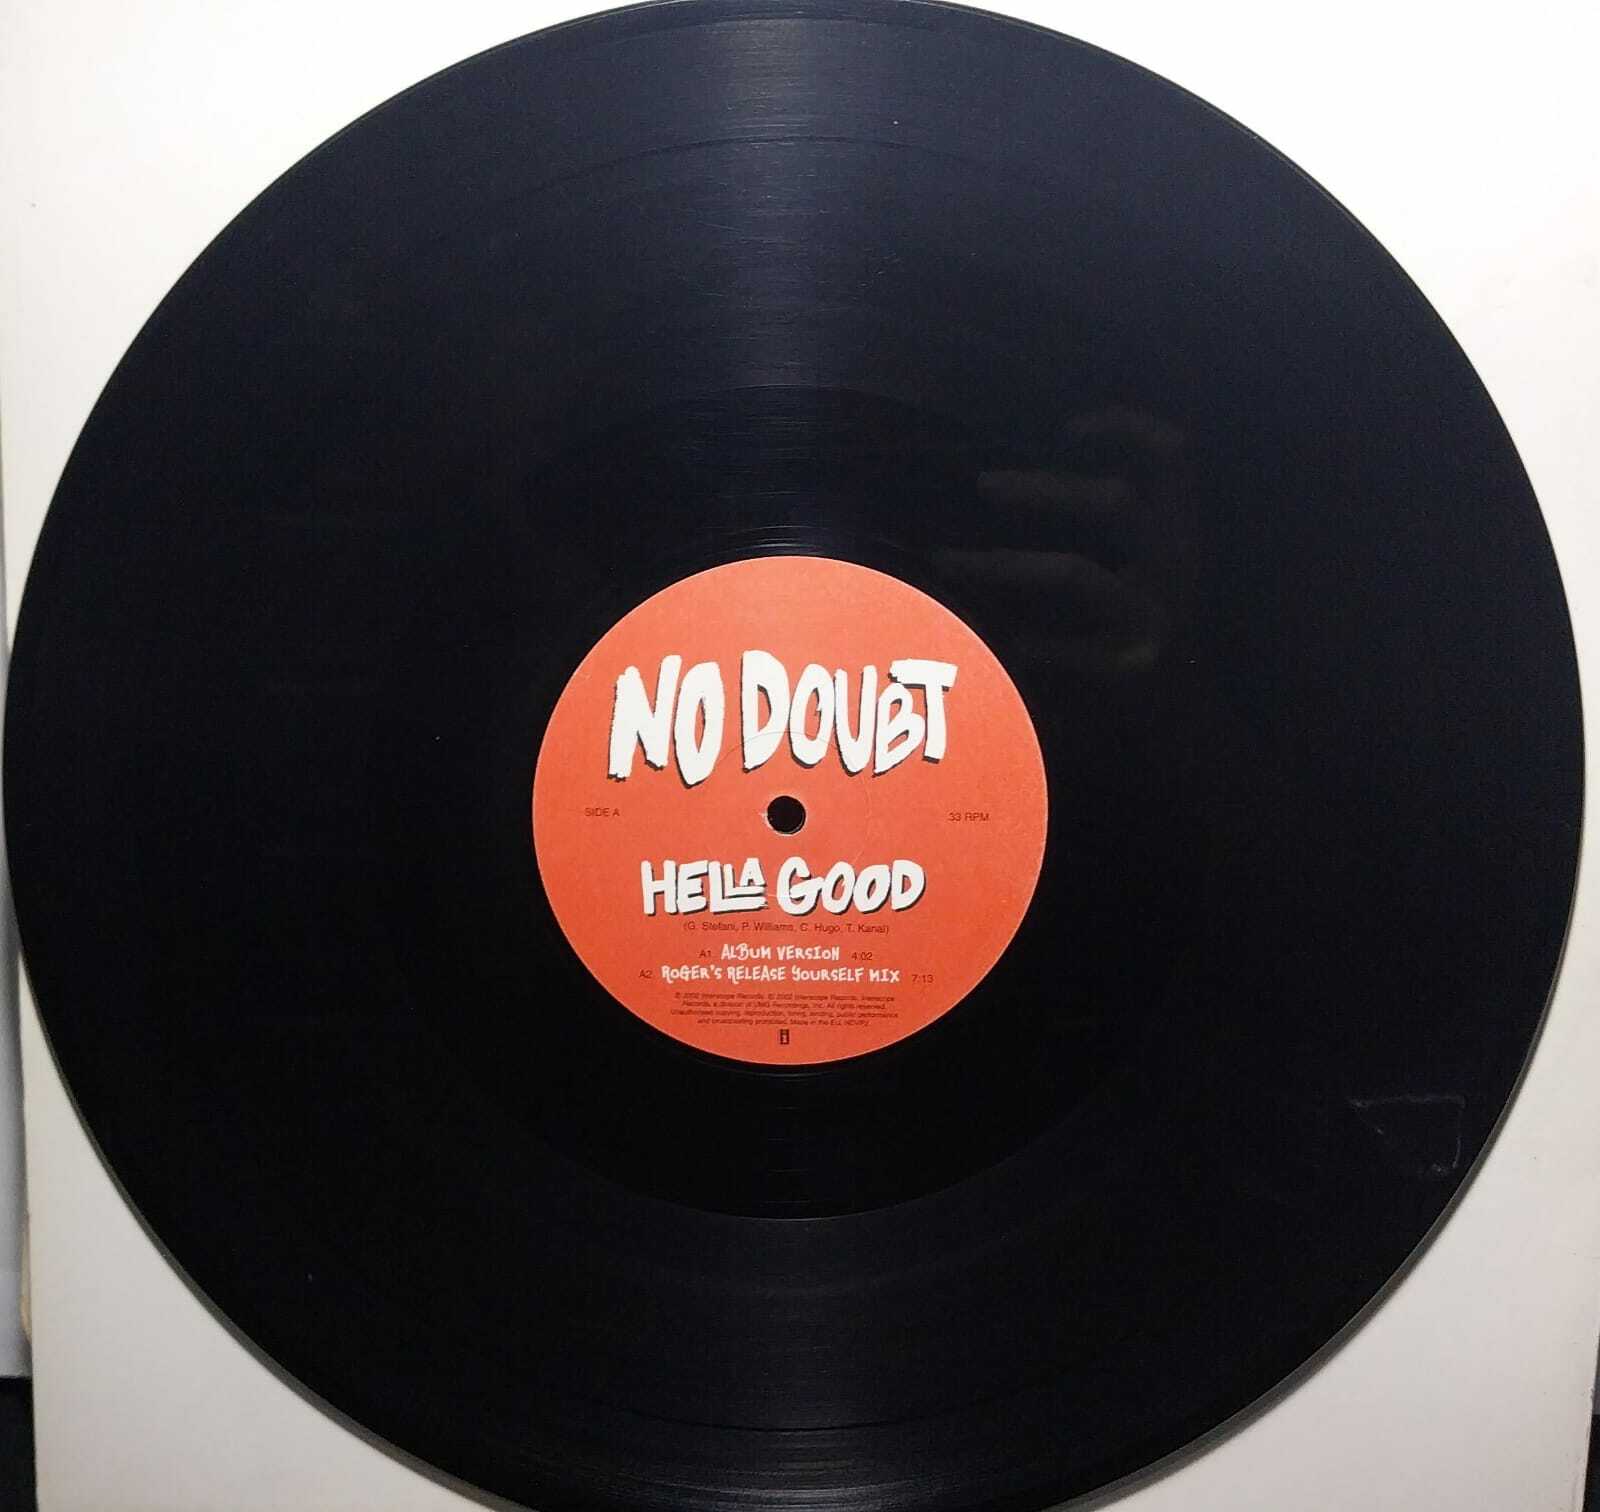 Vinil - No Doubt - Hella Good  - Roger Sanchez Remixes (EU)